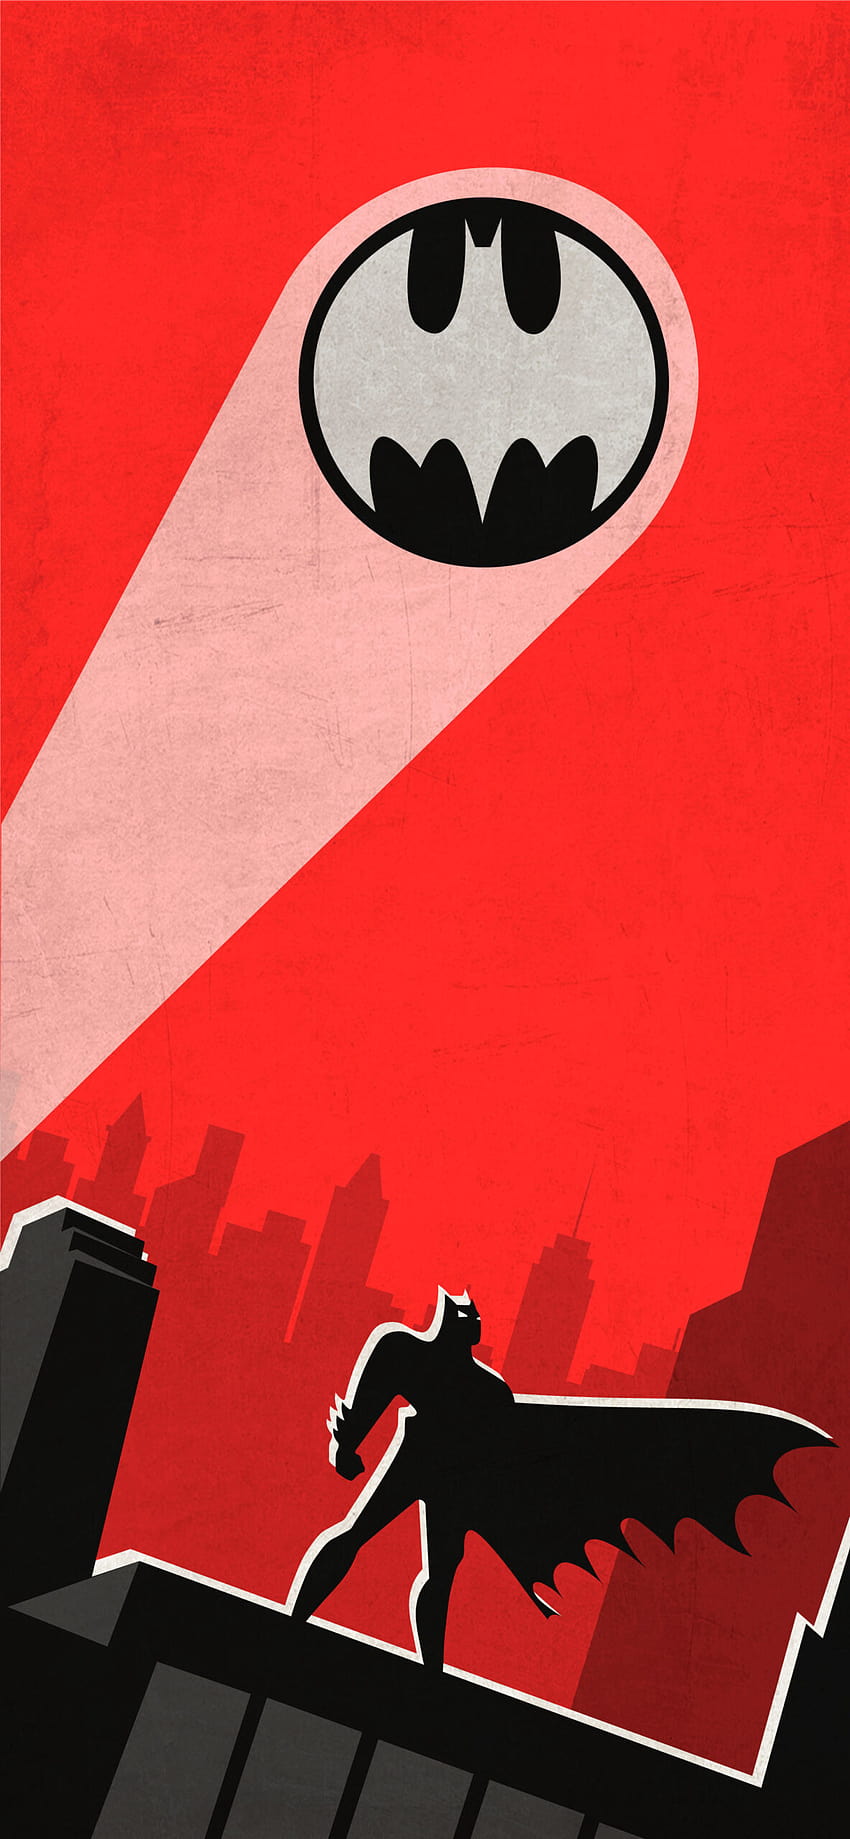 イーサン・ウォーカーが投稿したバットマン アニメイテッド シリーズ HD電話の壁紙